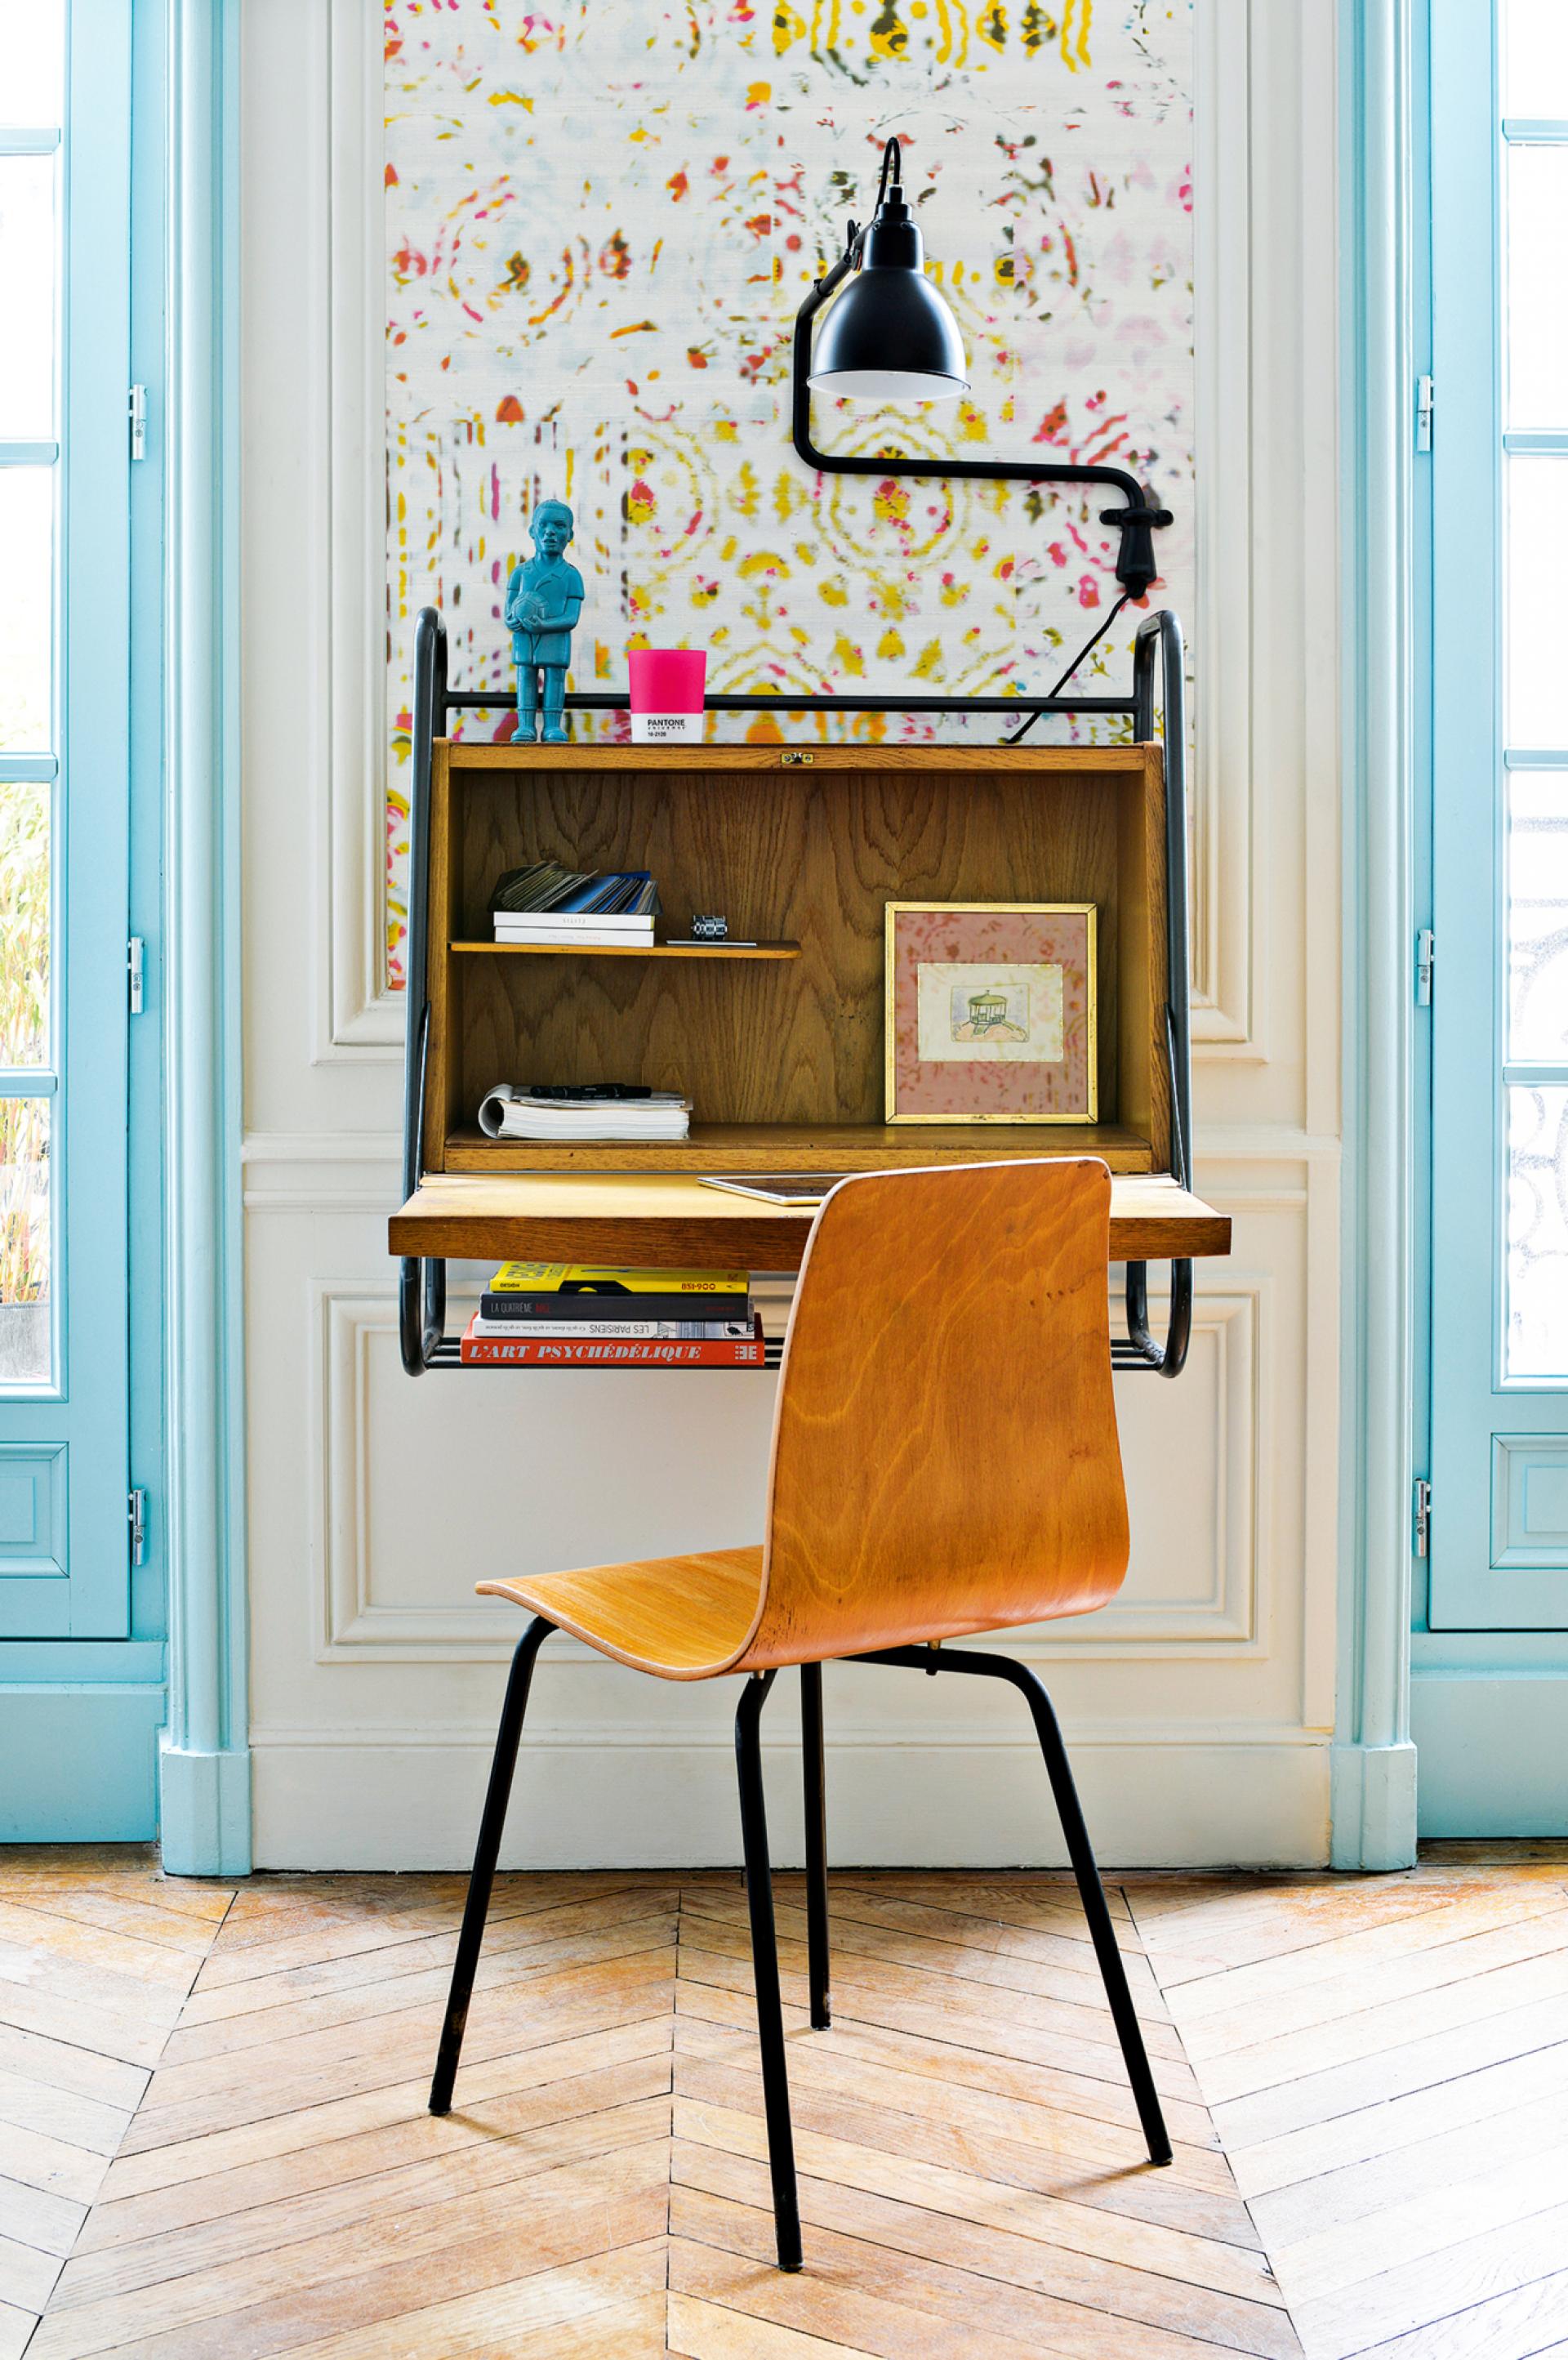 colourful apartment in paris, paris interior, turquoise interior, italianbark interior design blog, home desk corner, vintage desk